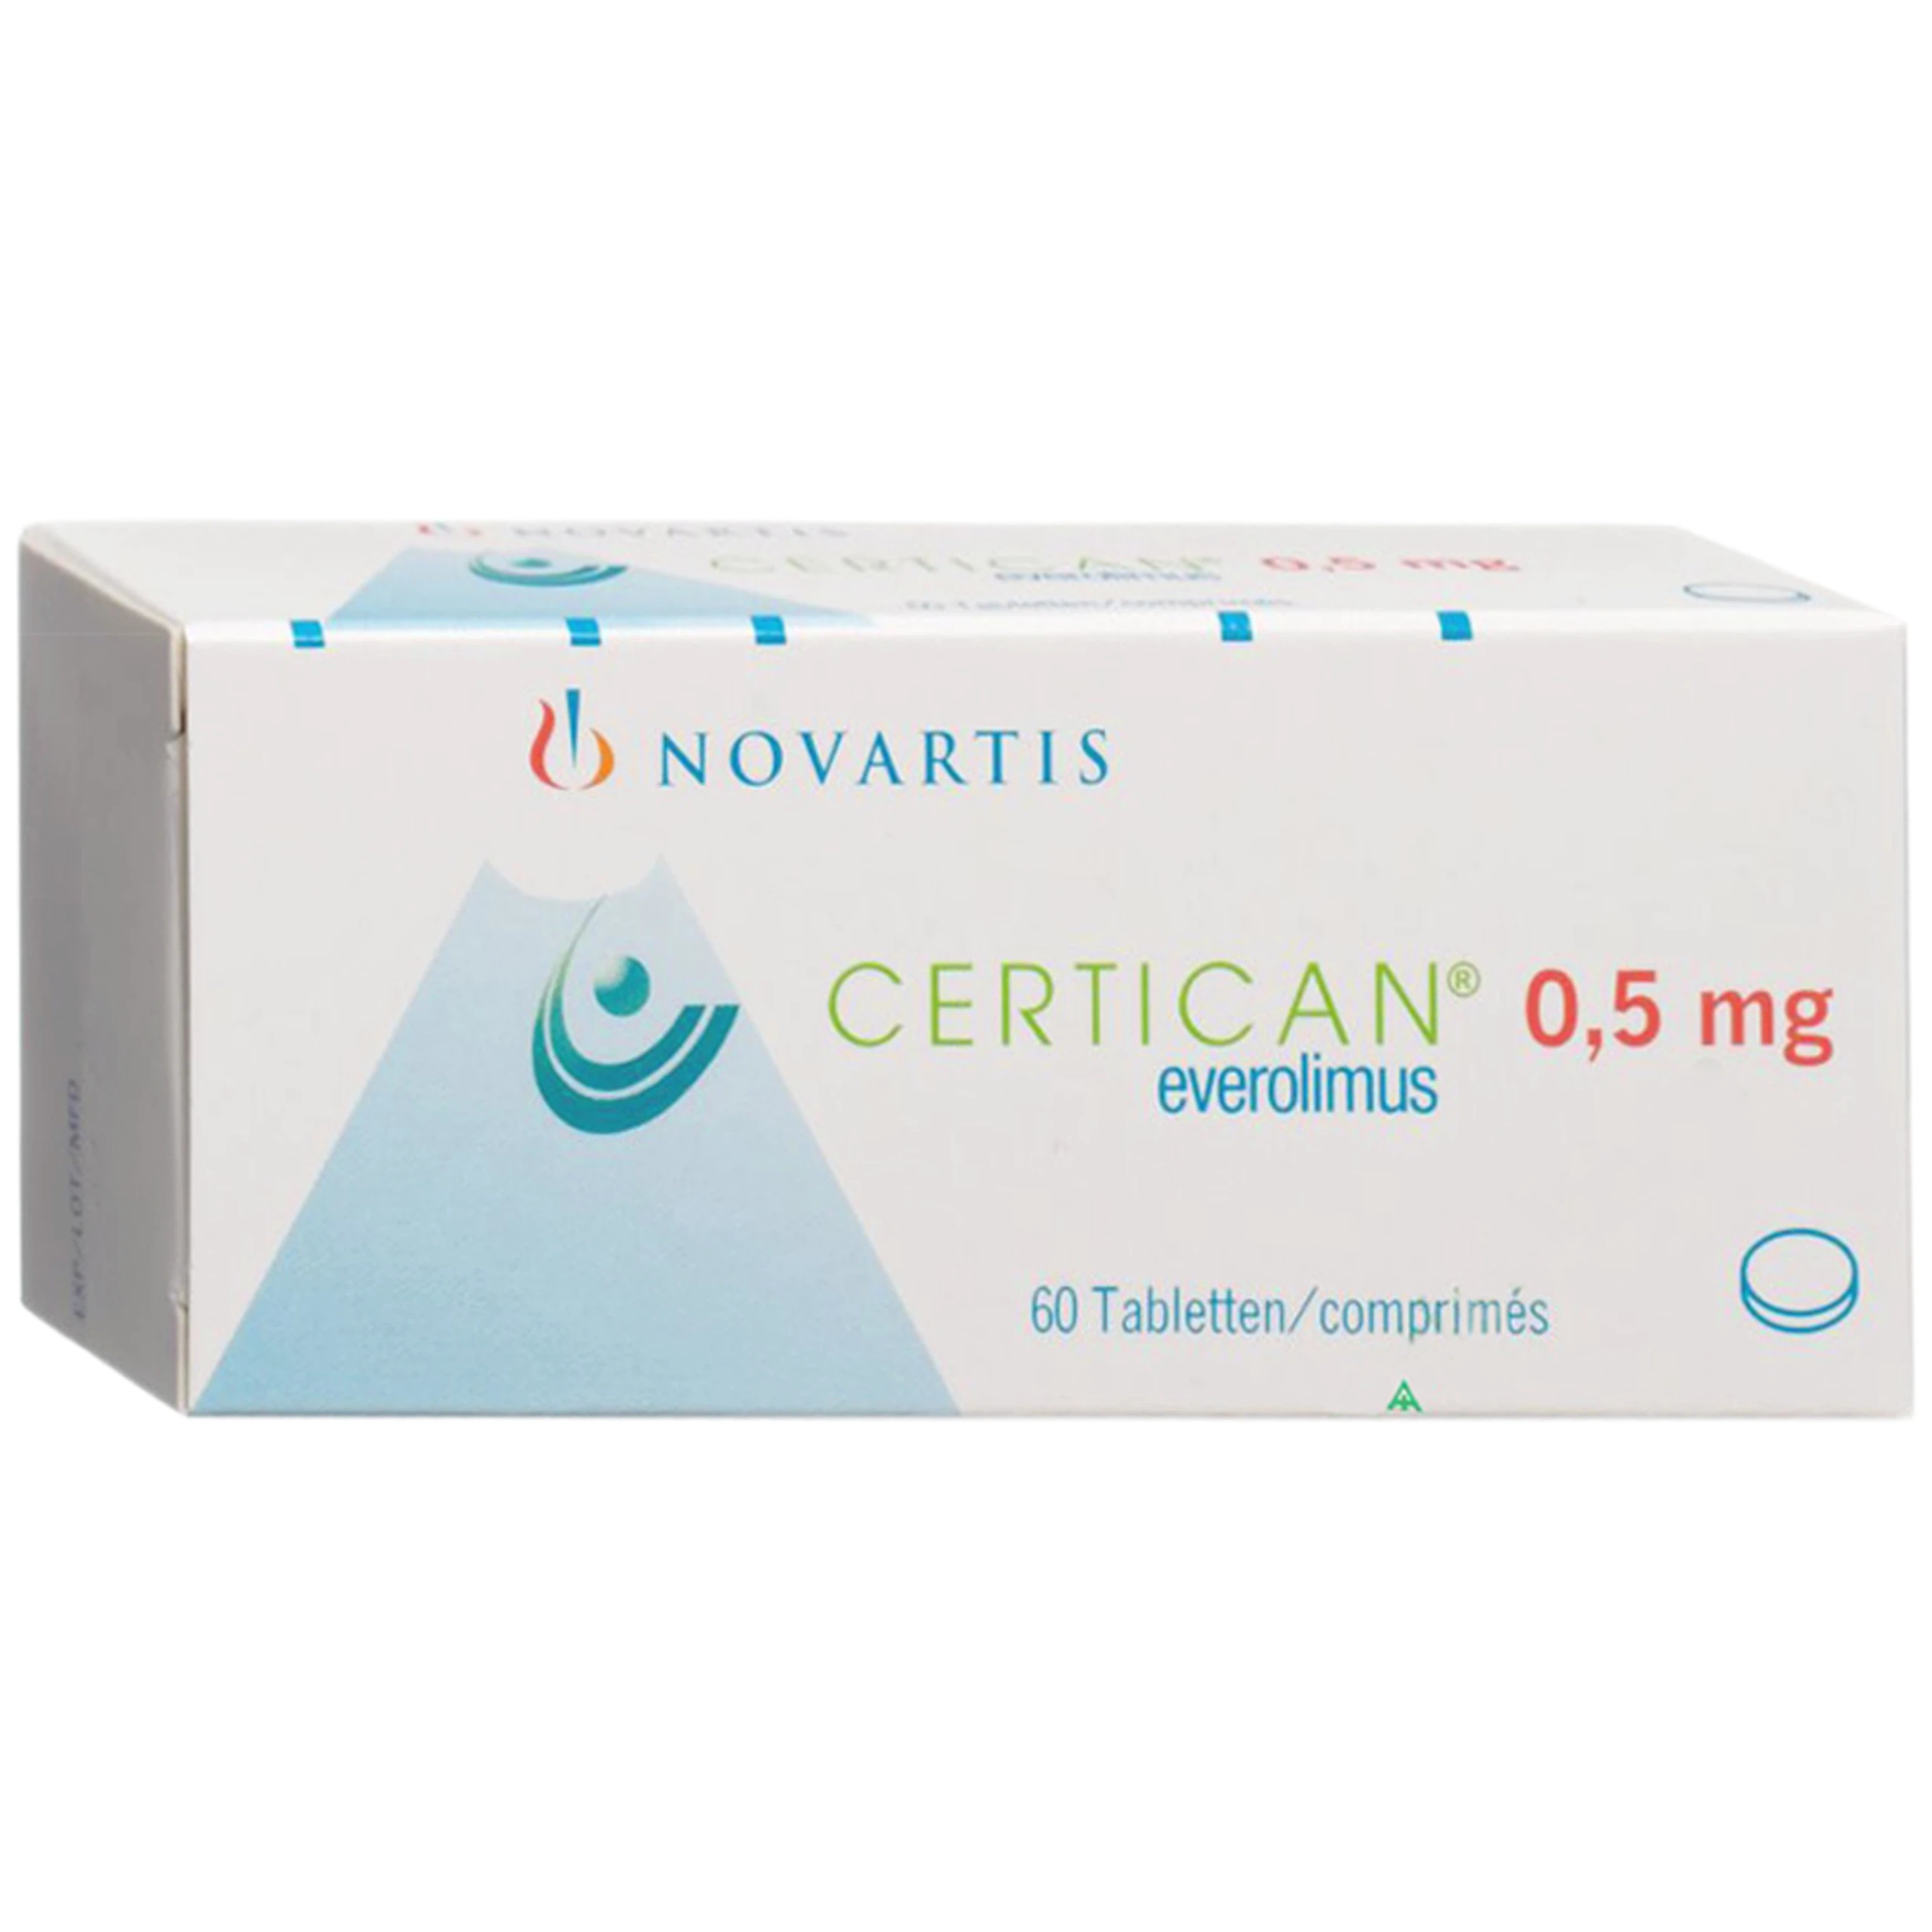 Thuốc Certican 0.5mg Novartis dự phòng thải tạng ghép ở bệnh nhân ghép thận hoặc tim (6 vỉ x 10 viên)